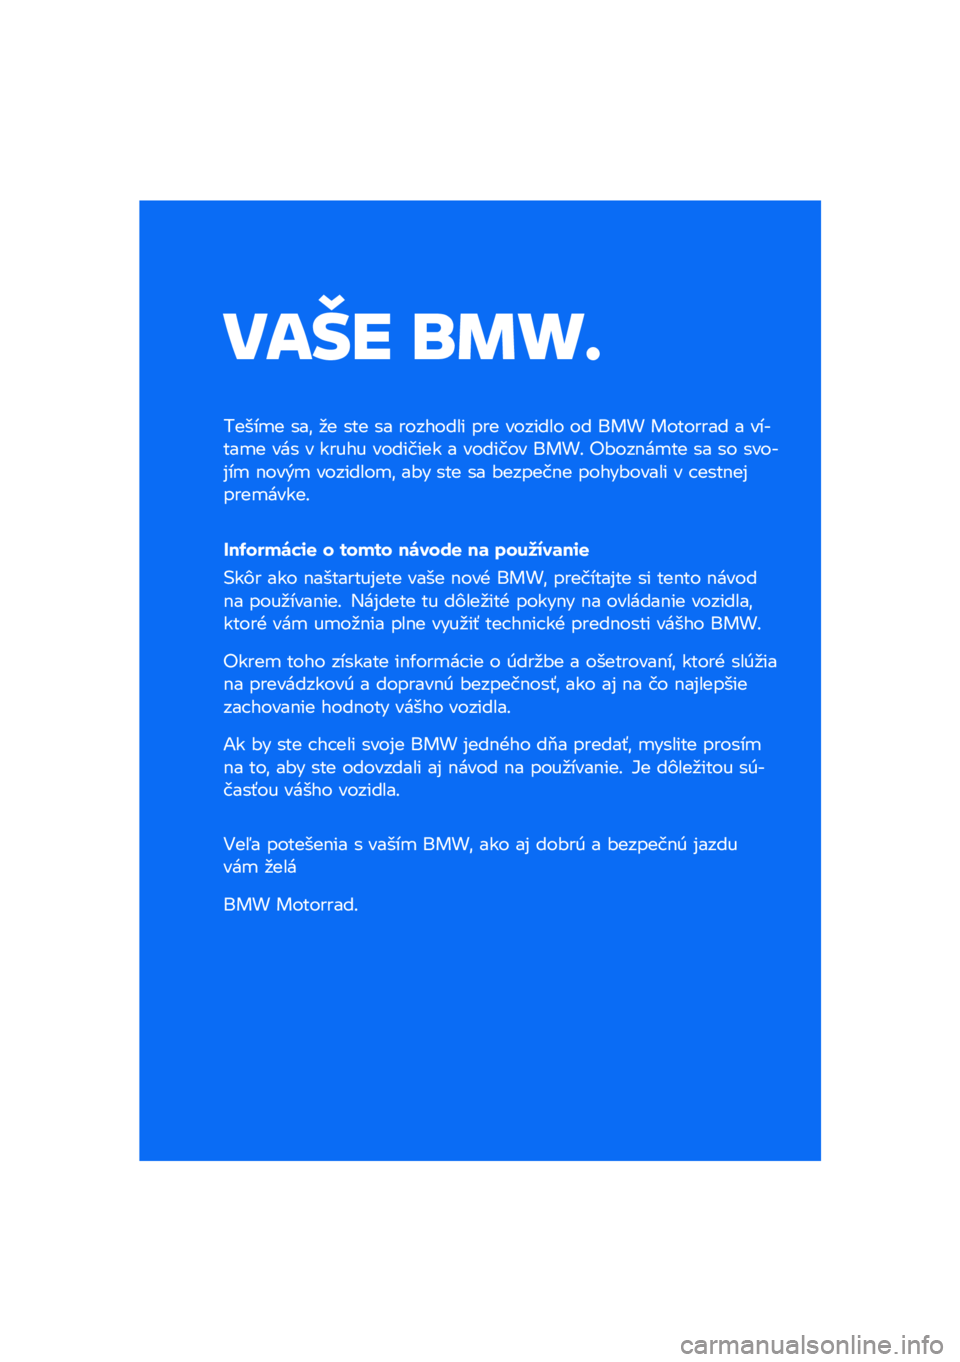 BMW MOTORRAD R NINE T URVAN G/S 2021  Návod na používanie (in Slovak) ���� �\b�	�
�
�����
� ���\f �
� ��� �� �������� ��� ������� �� ��� �������� � ������
� ��� � ����� �������� � ������� �